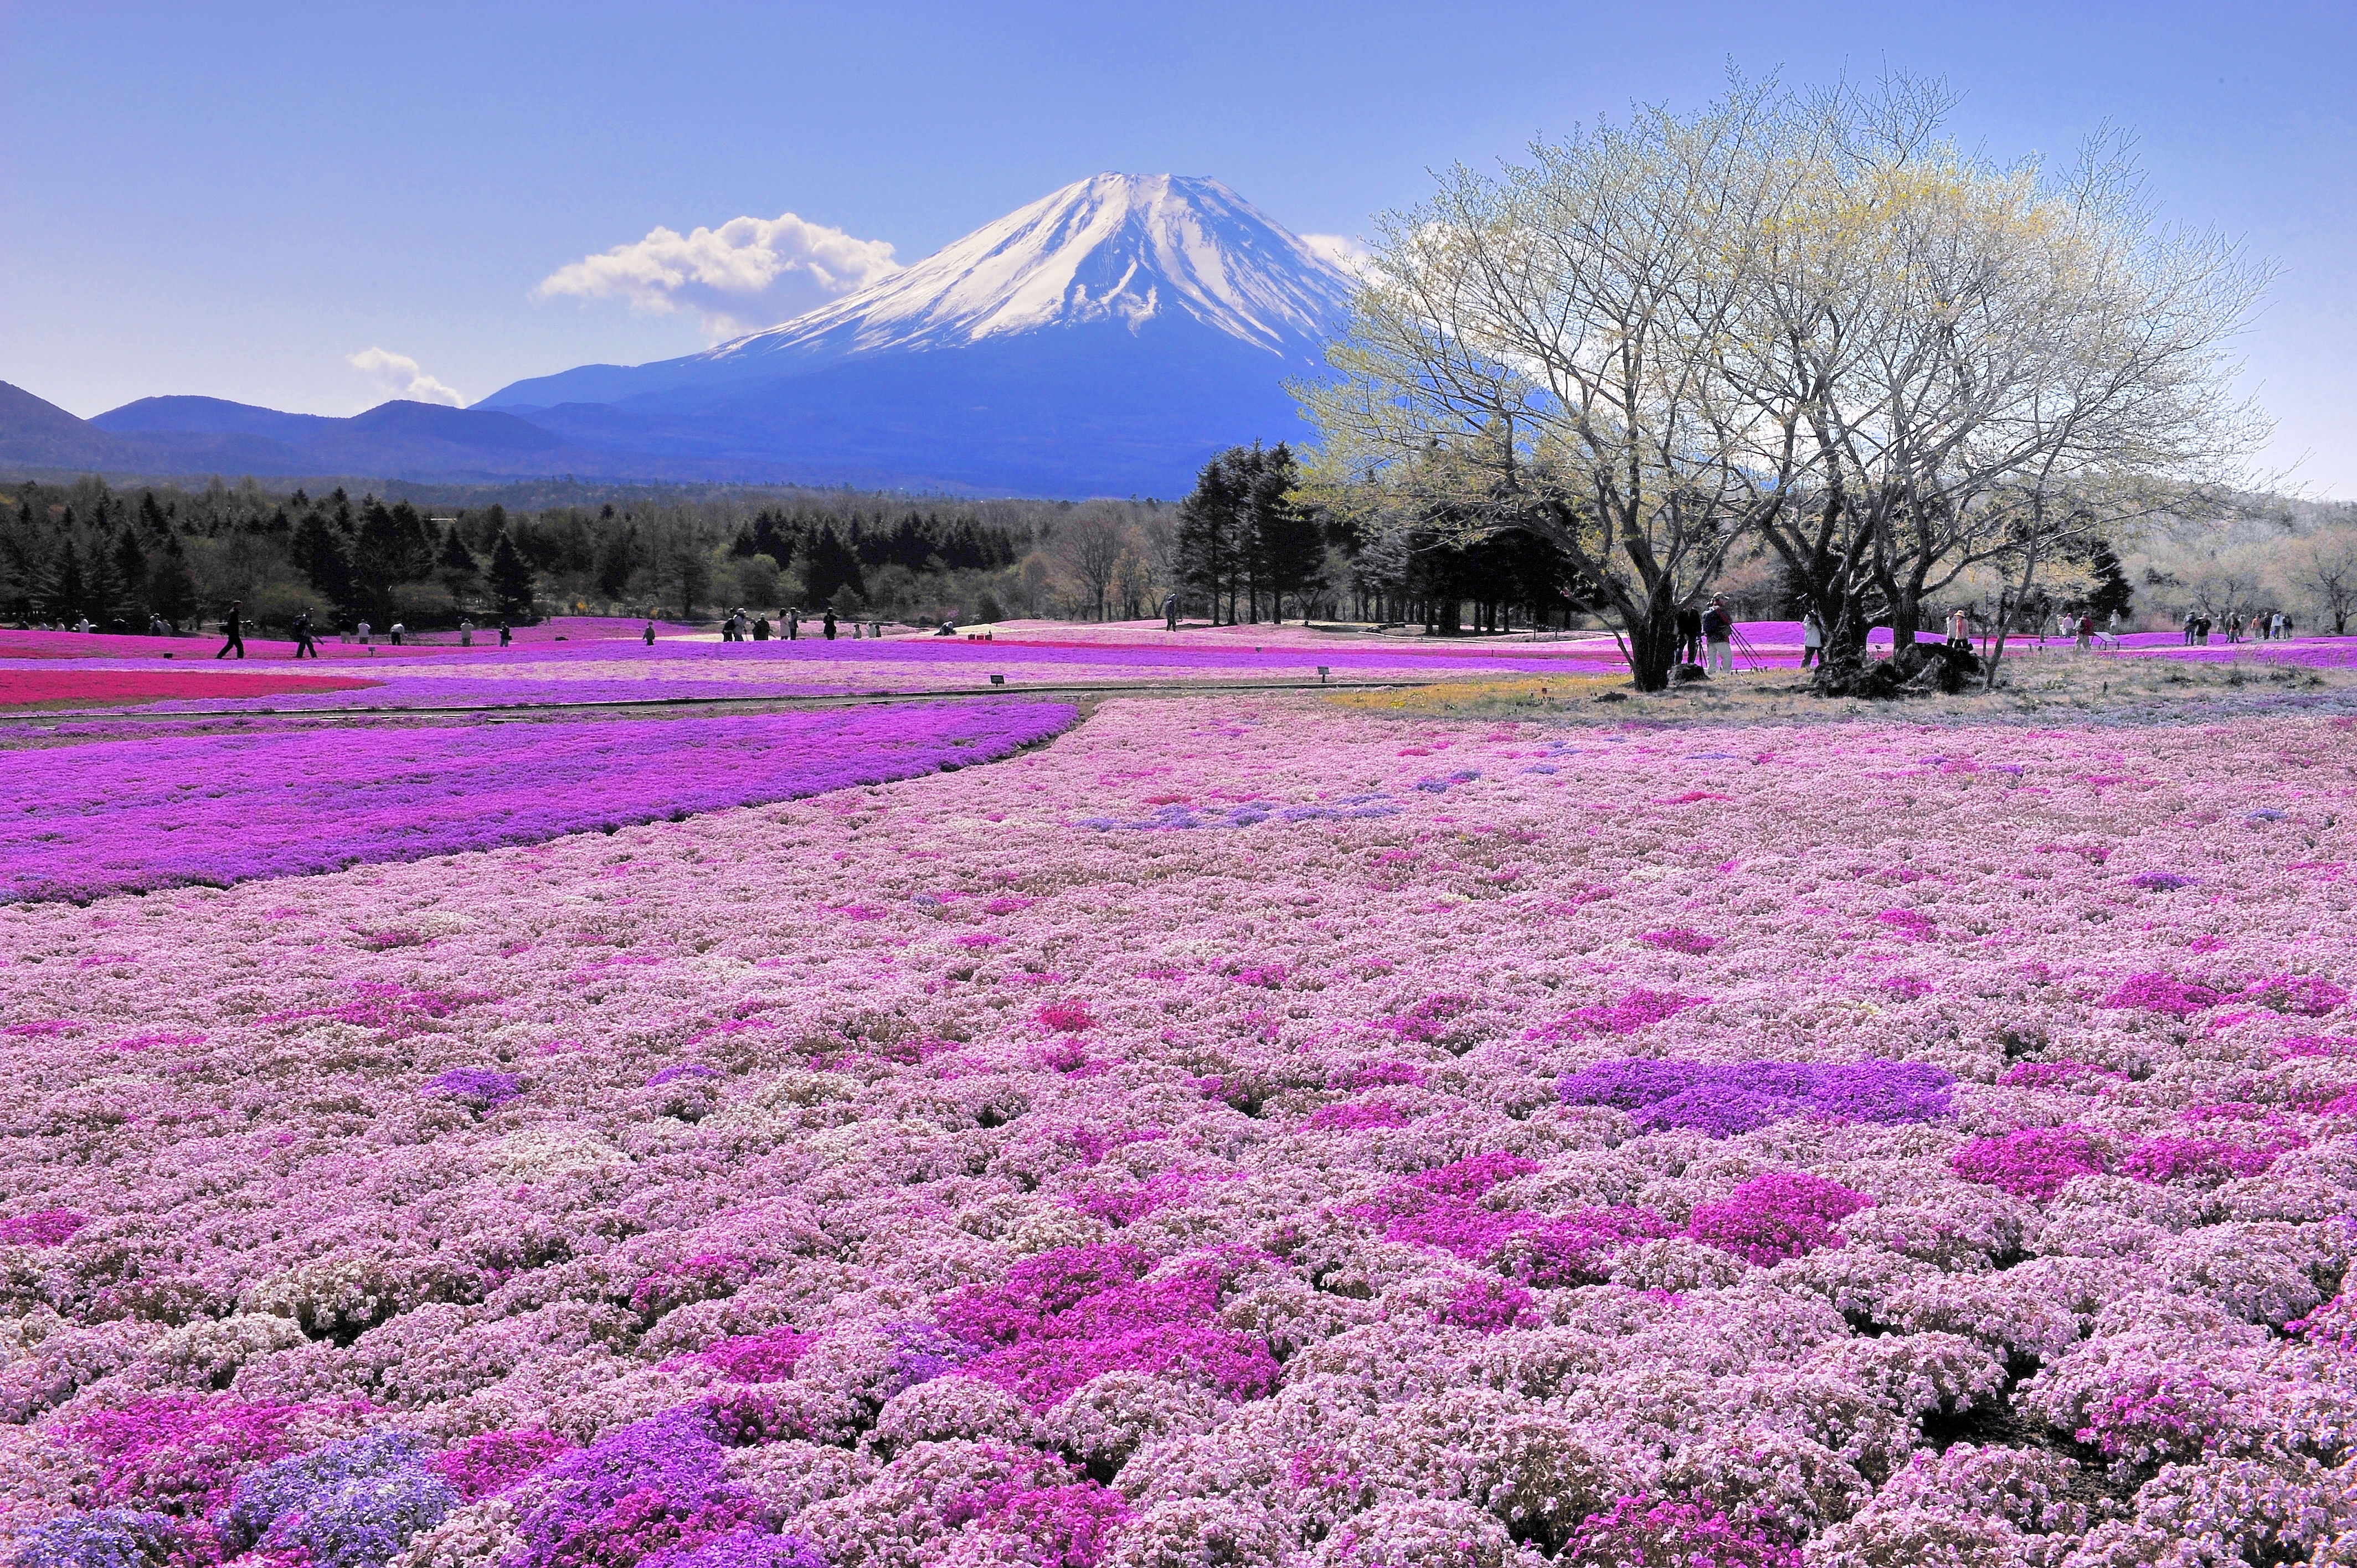 Là người yêu thích những cảnh quan ấn tượng? Những bức ảnh của View Mount Fuji Japan sẽ khiến bạn phát cuồng vì nó. Với những ngọn đồi xanh mướt bao quanh, hòa cùng cánh đồng hoa đầy màu sắc trong bức ảnh, bạn có thể dễ dàng tưởng tượng mình đang đứng trước tuyệt tác thiên nhiên.